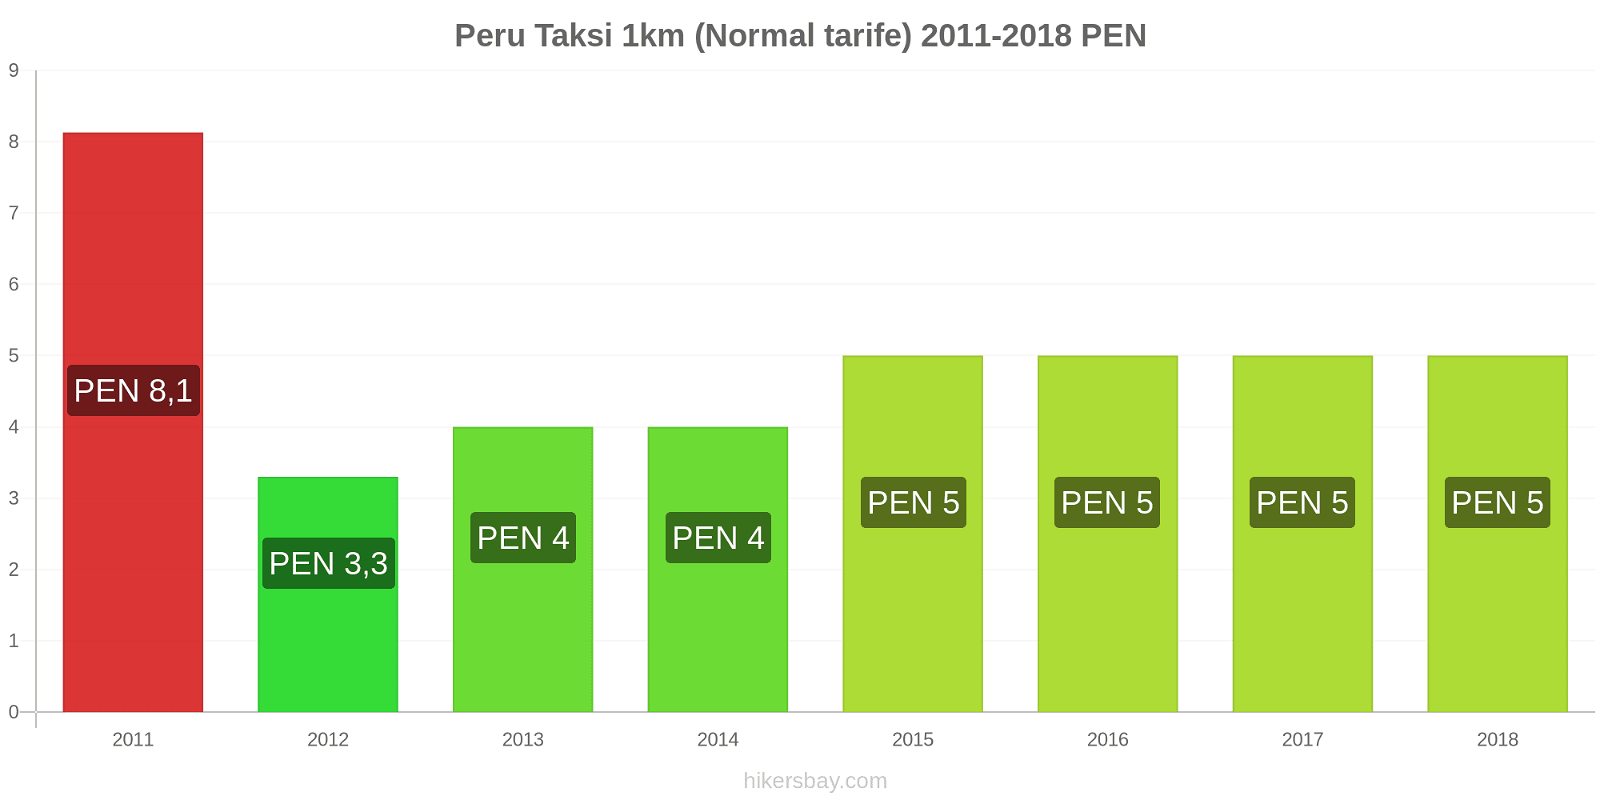 Peru fiyat değişiklikleri Taksi 1km (Normal tarife) hikersbay.com